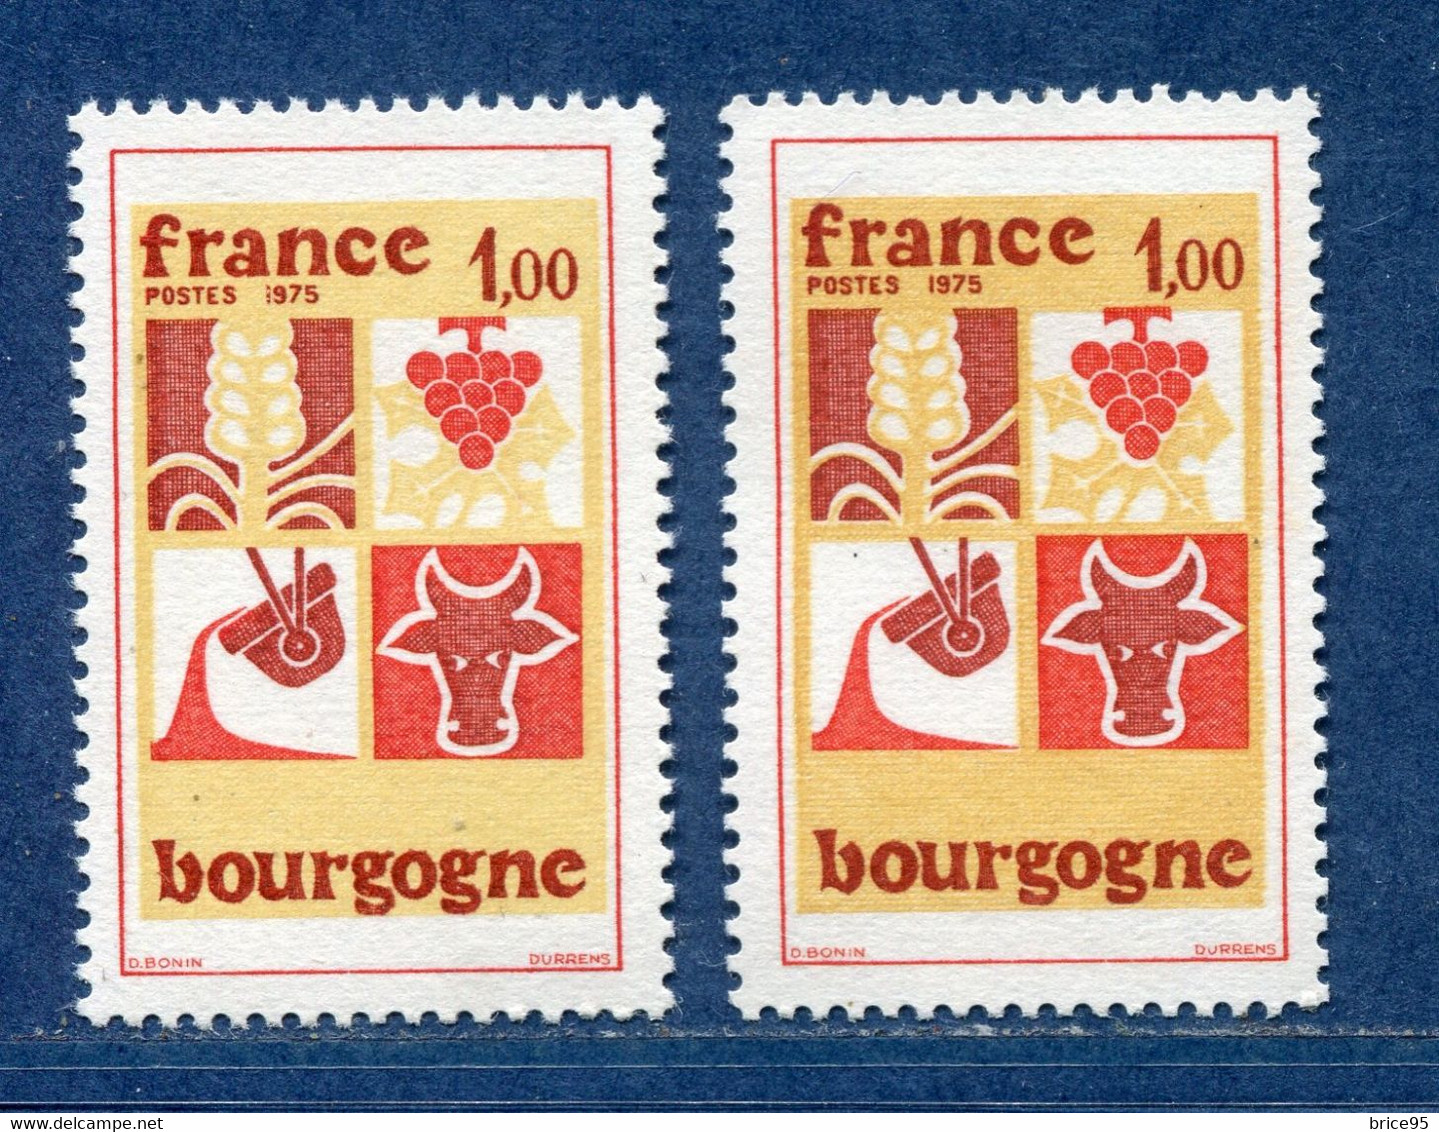 ⭐ France - Variété - YT N° 1848 - Couleurs - Pétouille - Neuf Sans Charnière - 1975 ⭐ - Ongebruikt